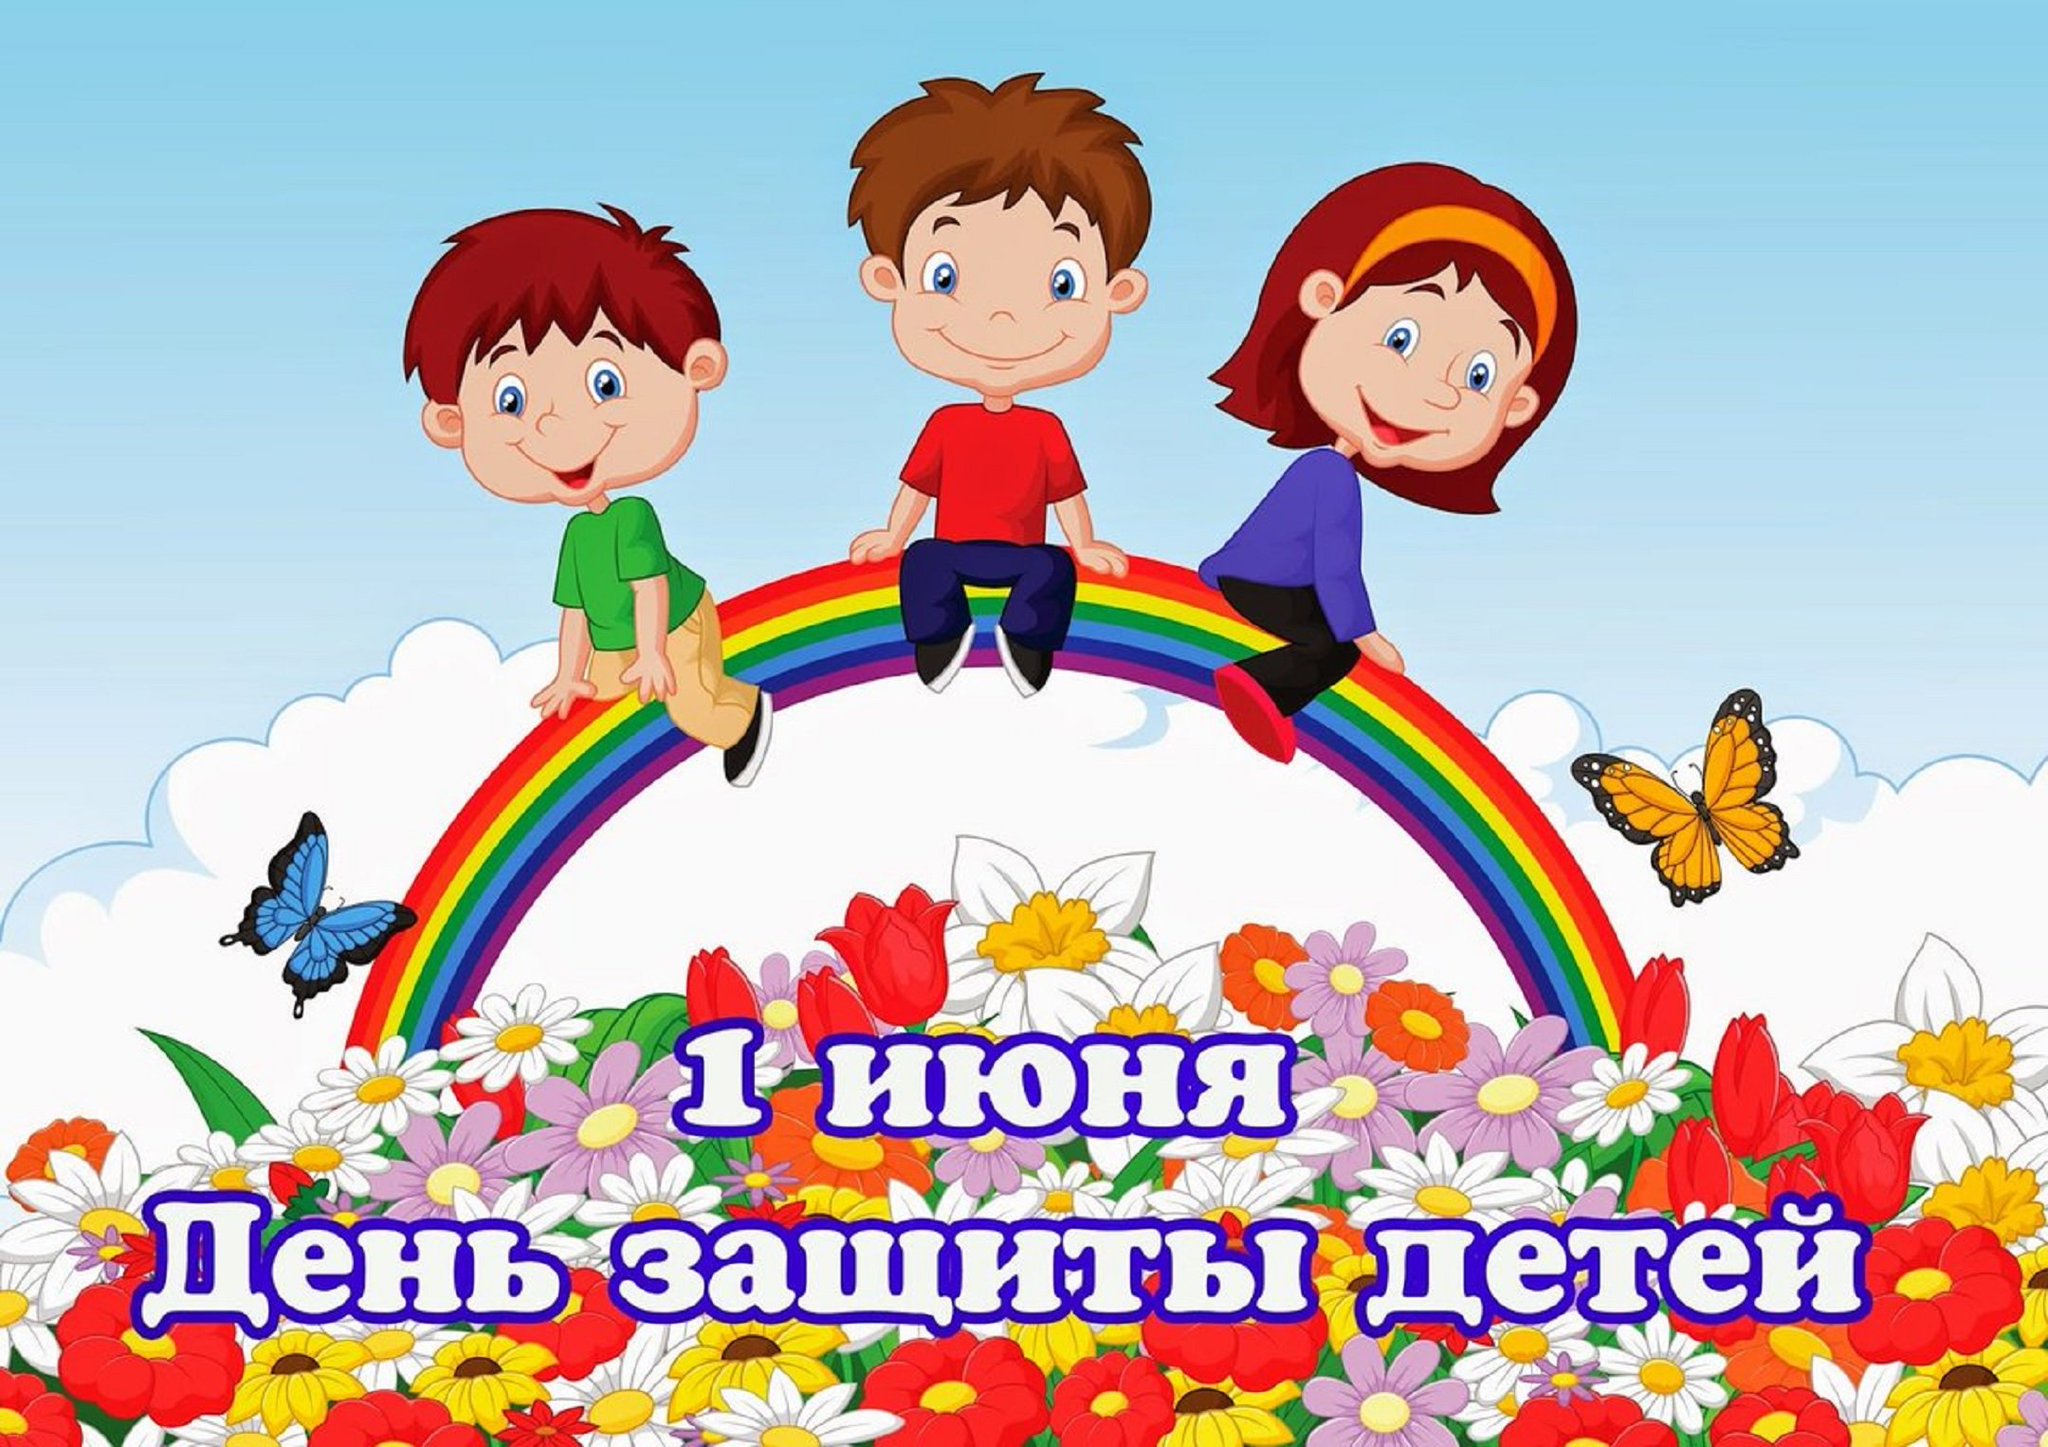 1 июня новосибирск. С днем защиты детей. С днем защиты детей открытки. 1 Июня день защиты детей. 1июун день зашита дитей.